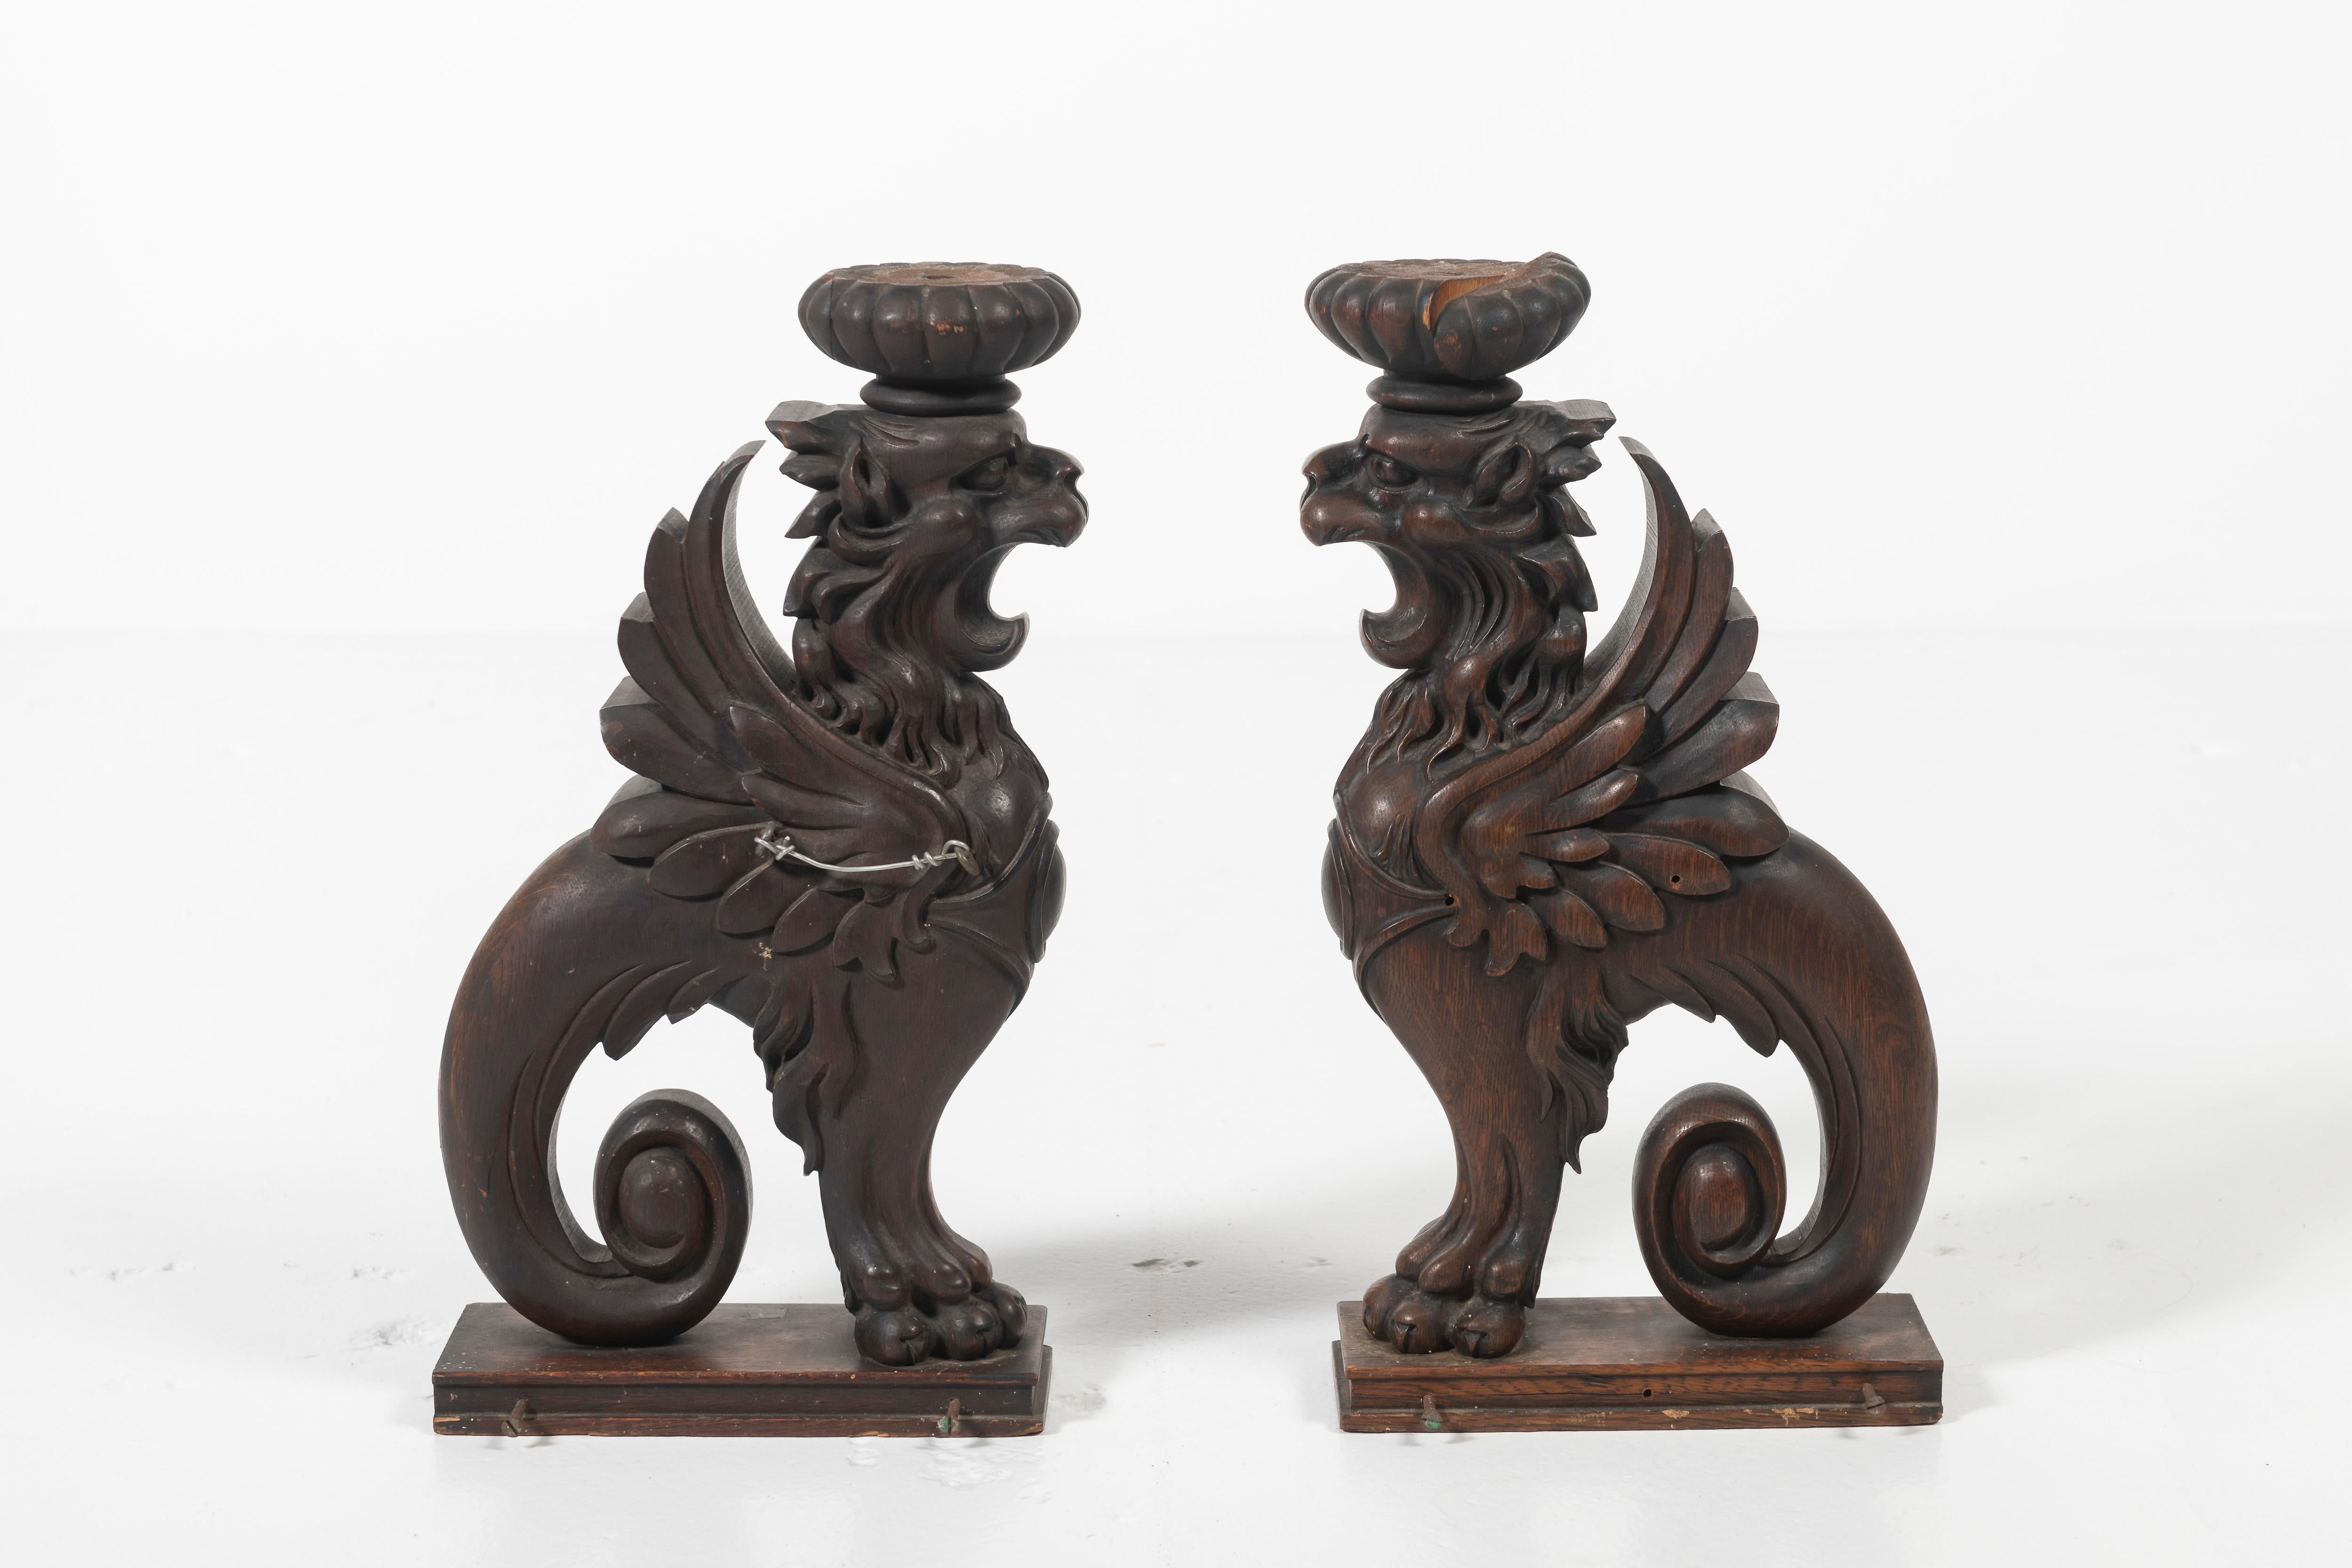 Hübsches Paar antiker geflügelter Greifen aus Eichenholz, um 1900. Diese kunstvollen Accessoires haben eine gute Größe und einen guten Zustand und verleihen dem Raum Charakter und Fantasie. Kann für Kerzen oder andere Gegenstände verwendet werden.